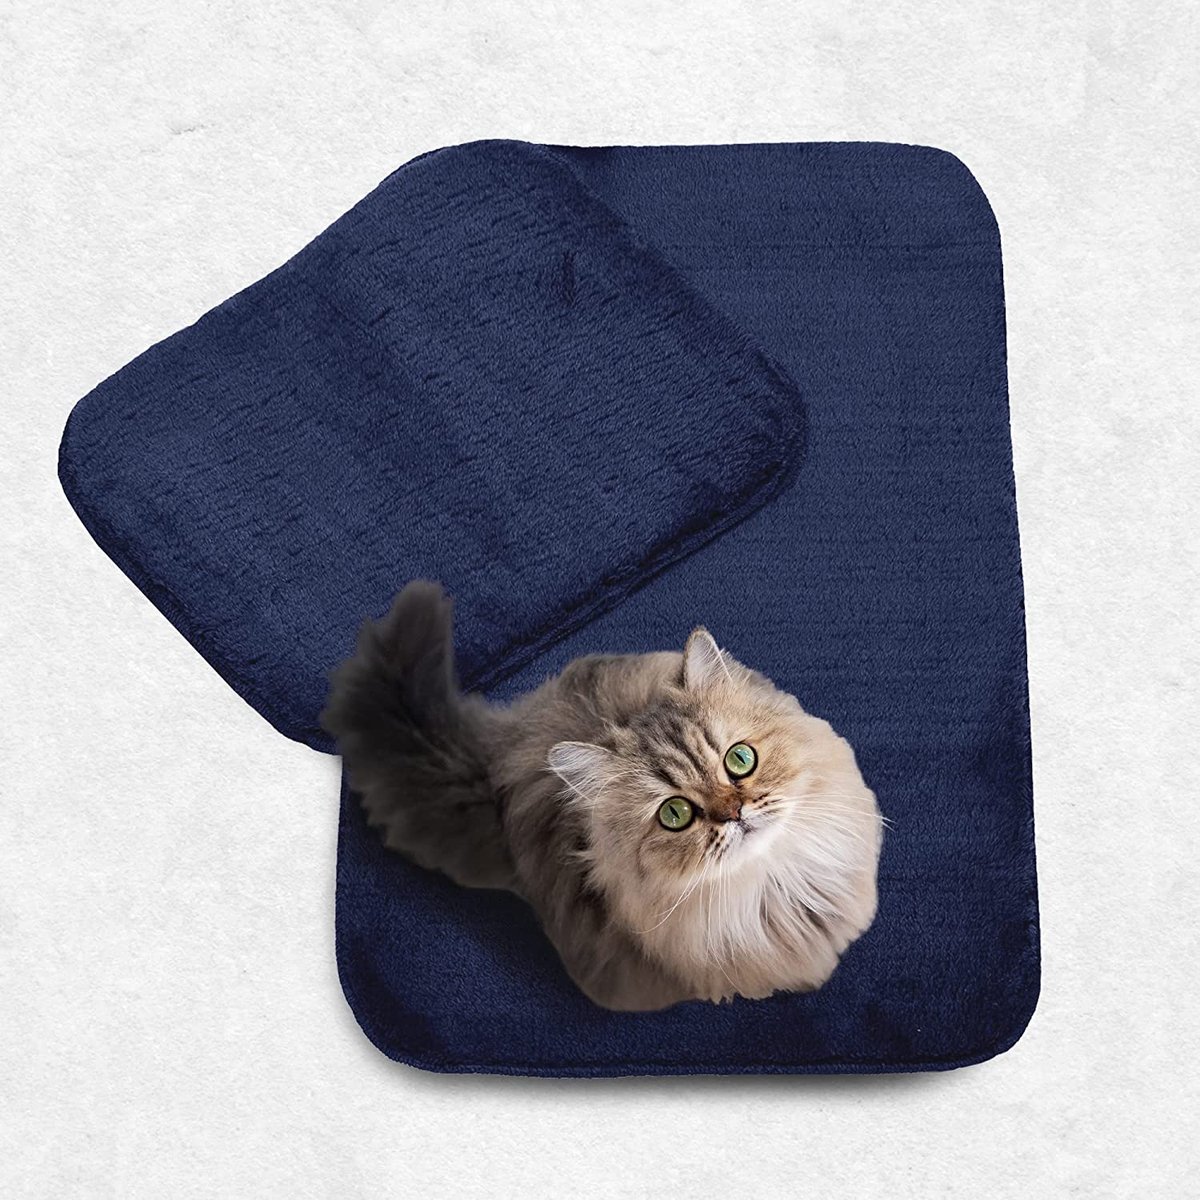 ELART Badmat, 2-delige badmat, 60 x 100 cm, wc-mat, 60 x 50 cm, badmatten, microvezel, absorberend, wasbaar douchemat (marineblauw)